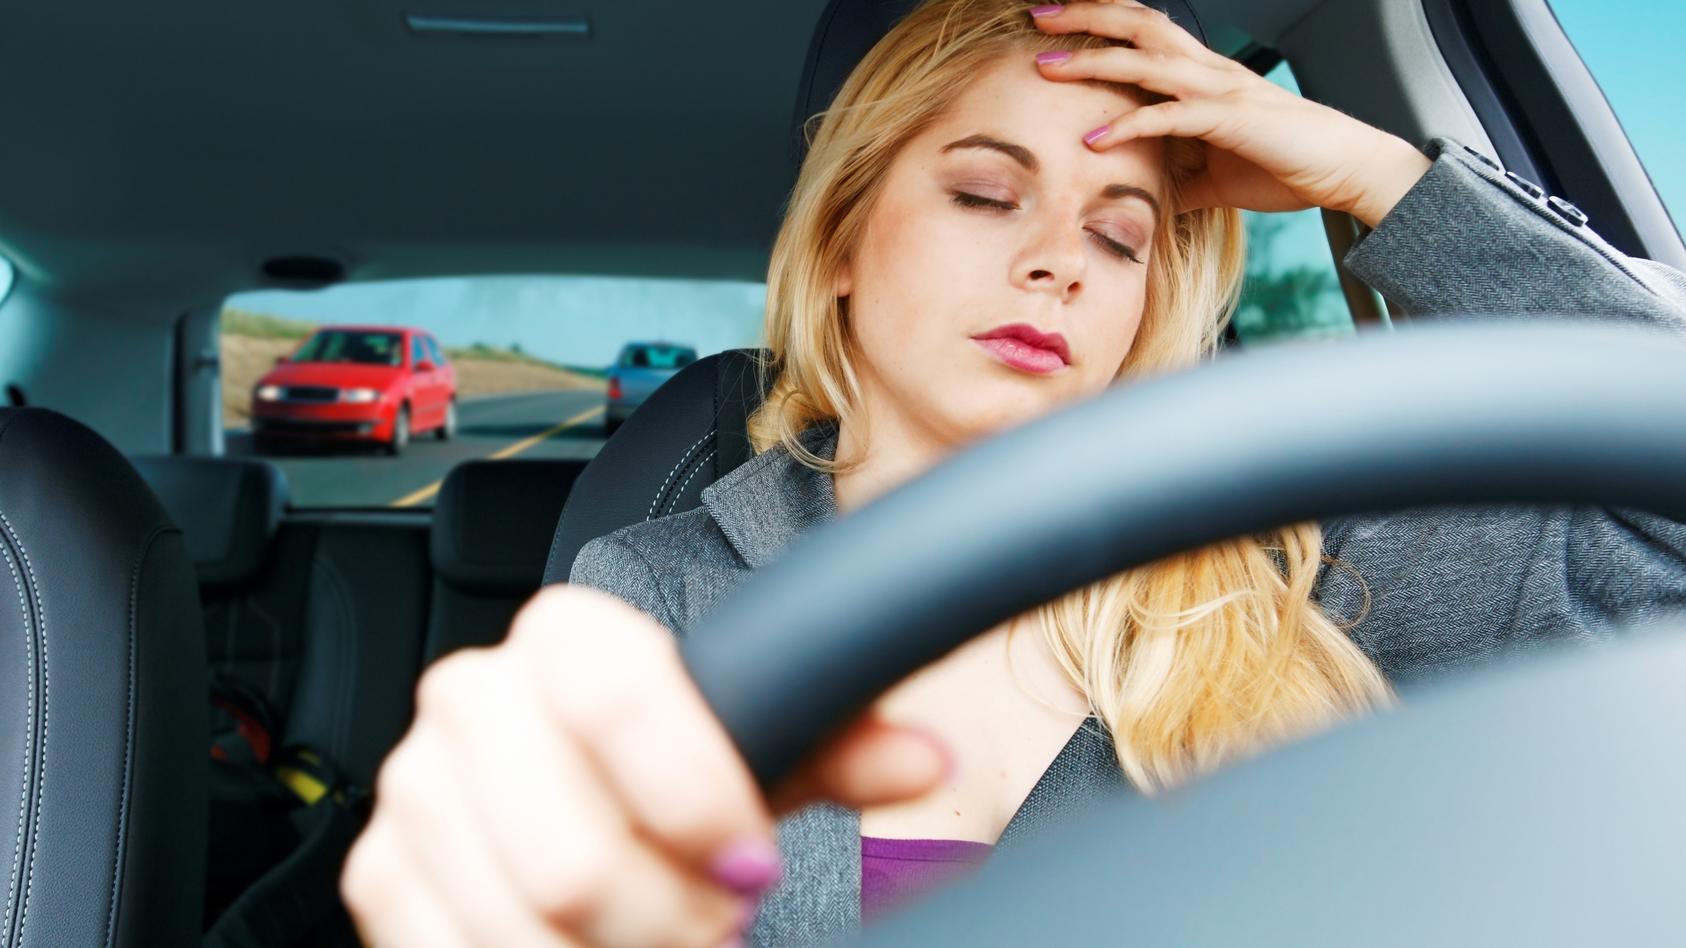 Kopfschmerzen im Auto? Daran kann es liegen! Gefährliche Autostrahlung